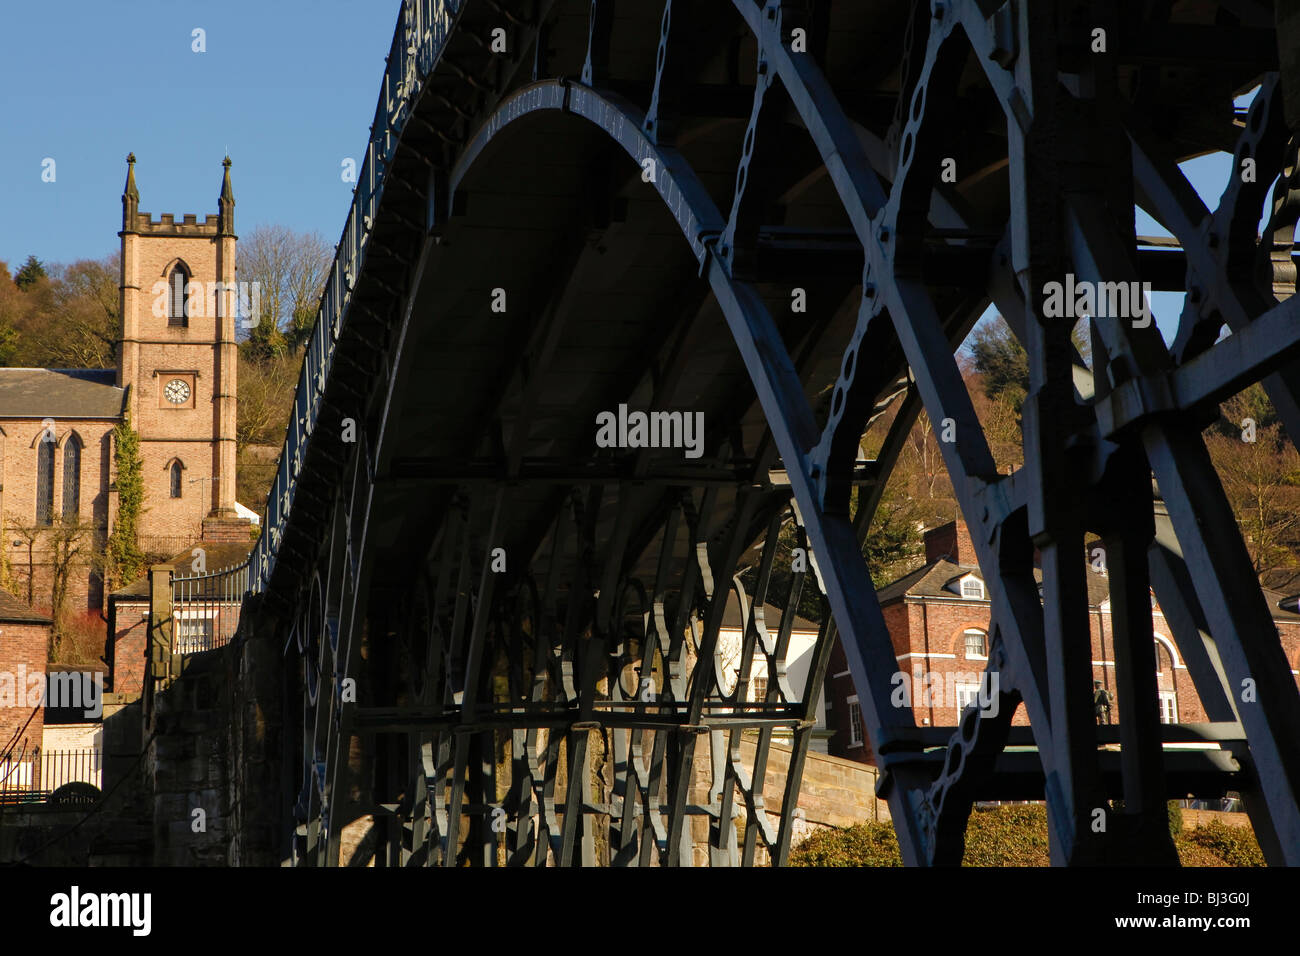 Die Ironbridge in Ironbridge Gorge, Telford, Shropshire, England. Anerkannt als die Wiege der industriellen Revolution. Stockfoto